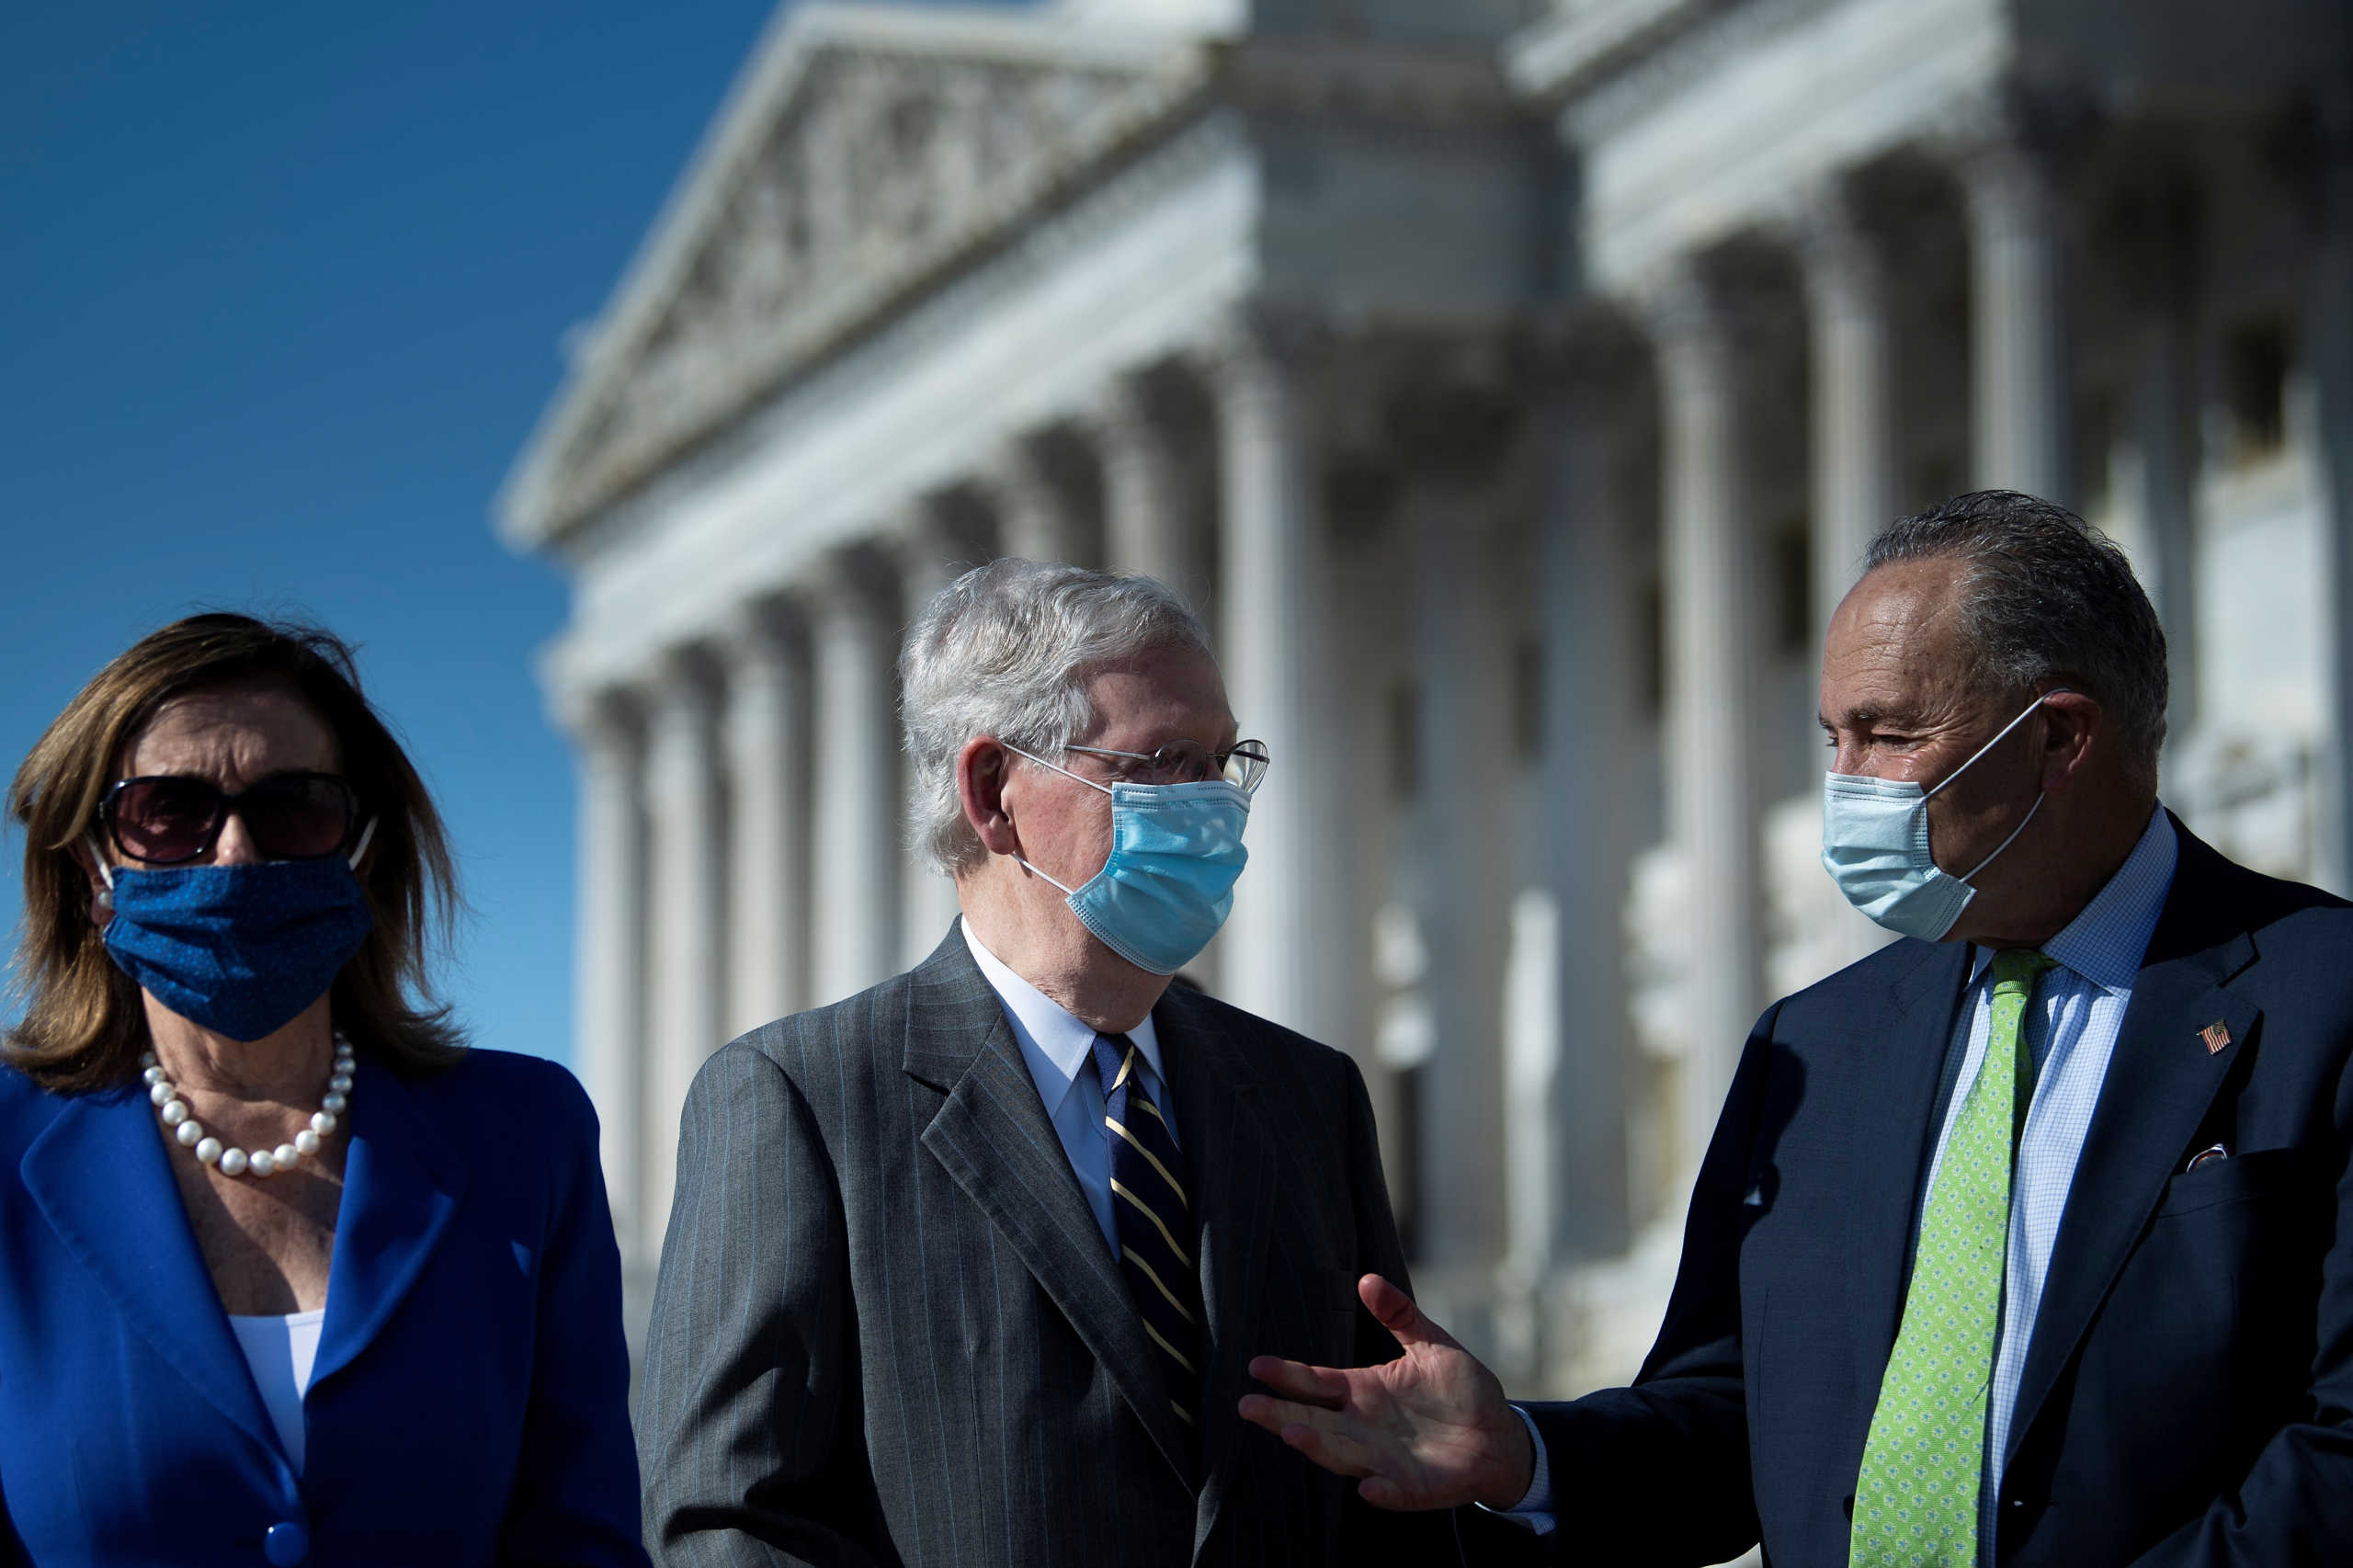 Συναγερμός στο Κογκρέσο: 13 κρούσματα και η Πελόζι διέταξε… υποχρεωτική μάσκα